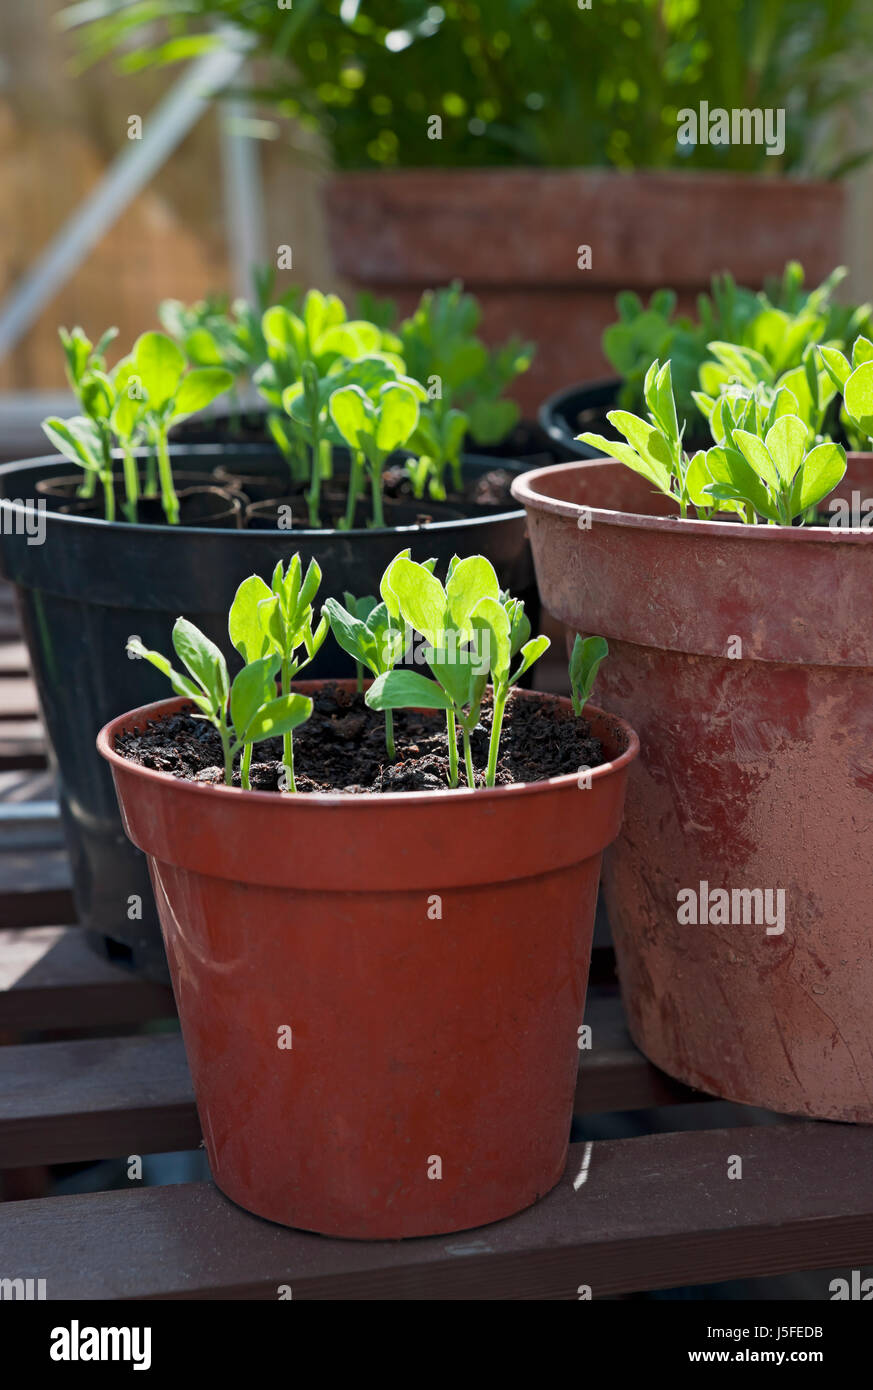 Gros plan de pots pot de jeunes plants de pois doux plantent des plantules dans la serre au printemps Banque D'Images